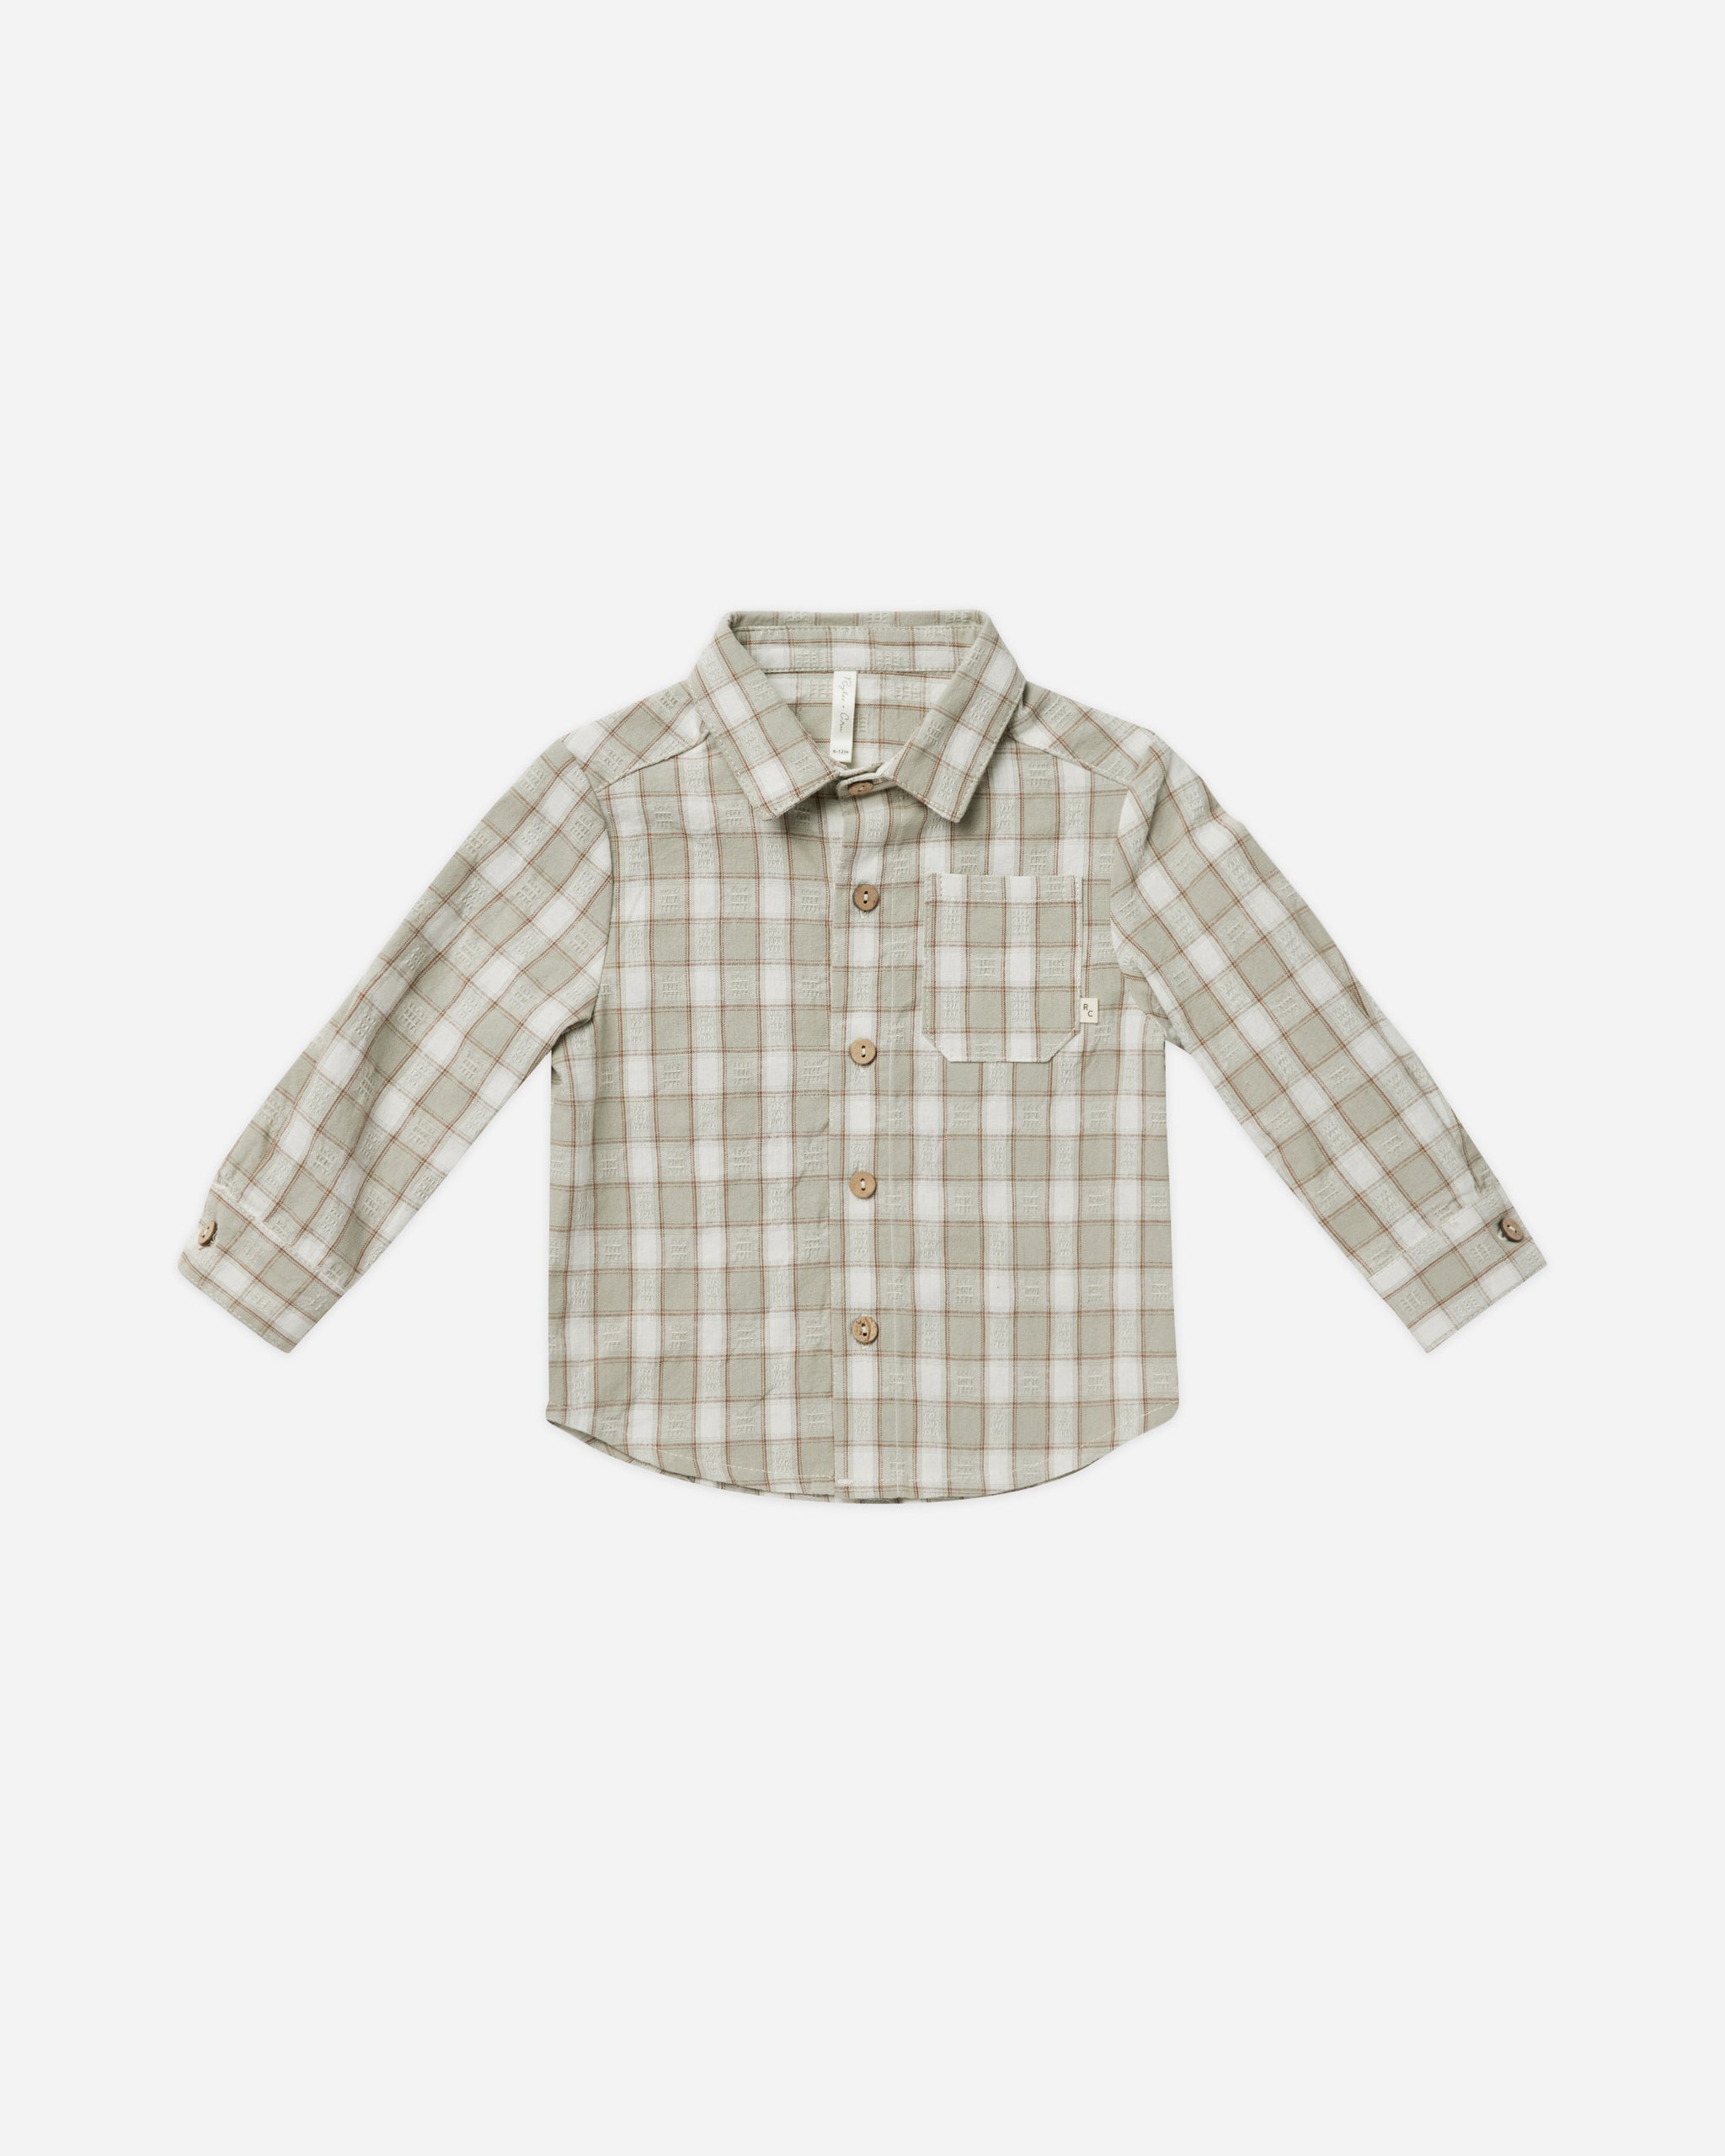 Collared Shirt || Pewter Plaid – Rylee + Cru